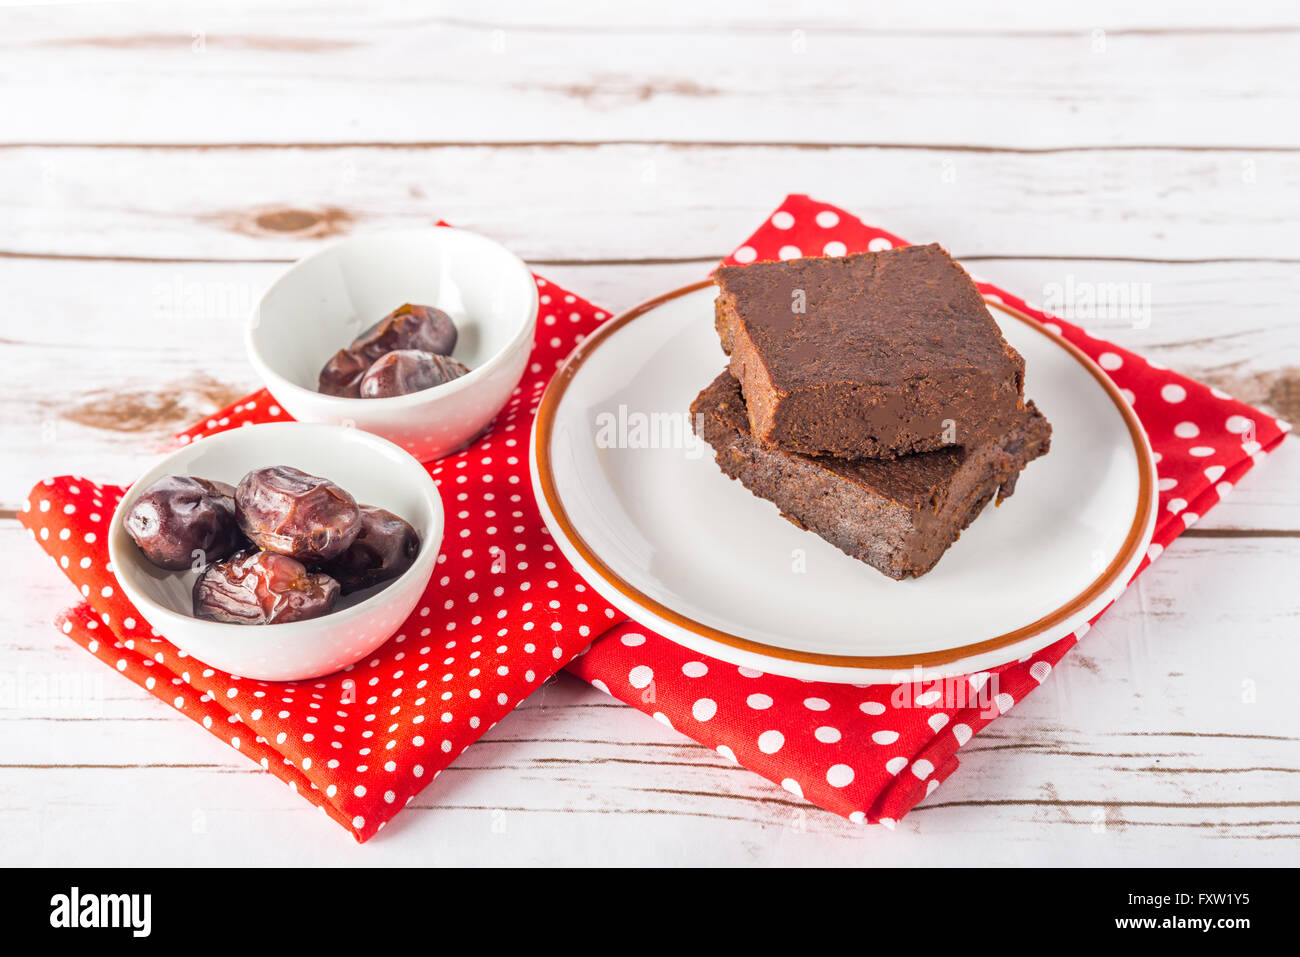 Gesunde glutenfreie Paleo-Stil-Brownies mit Süßkartoffel, Datteln und Mandeln Mehl auf einem weißen Teller gemacht Stockfoto